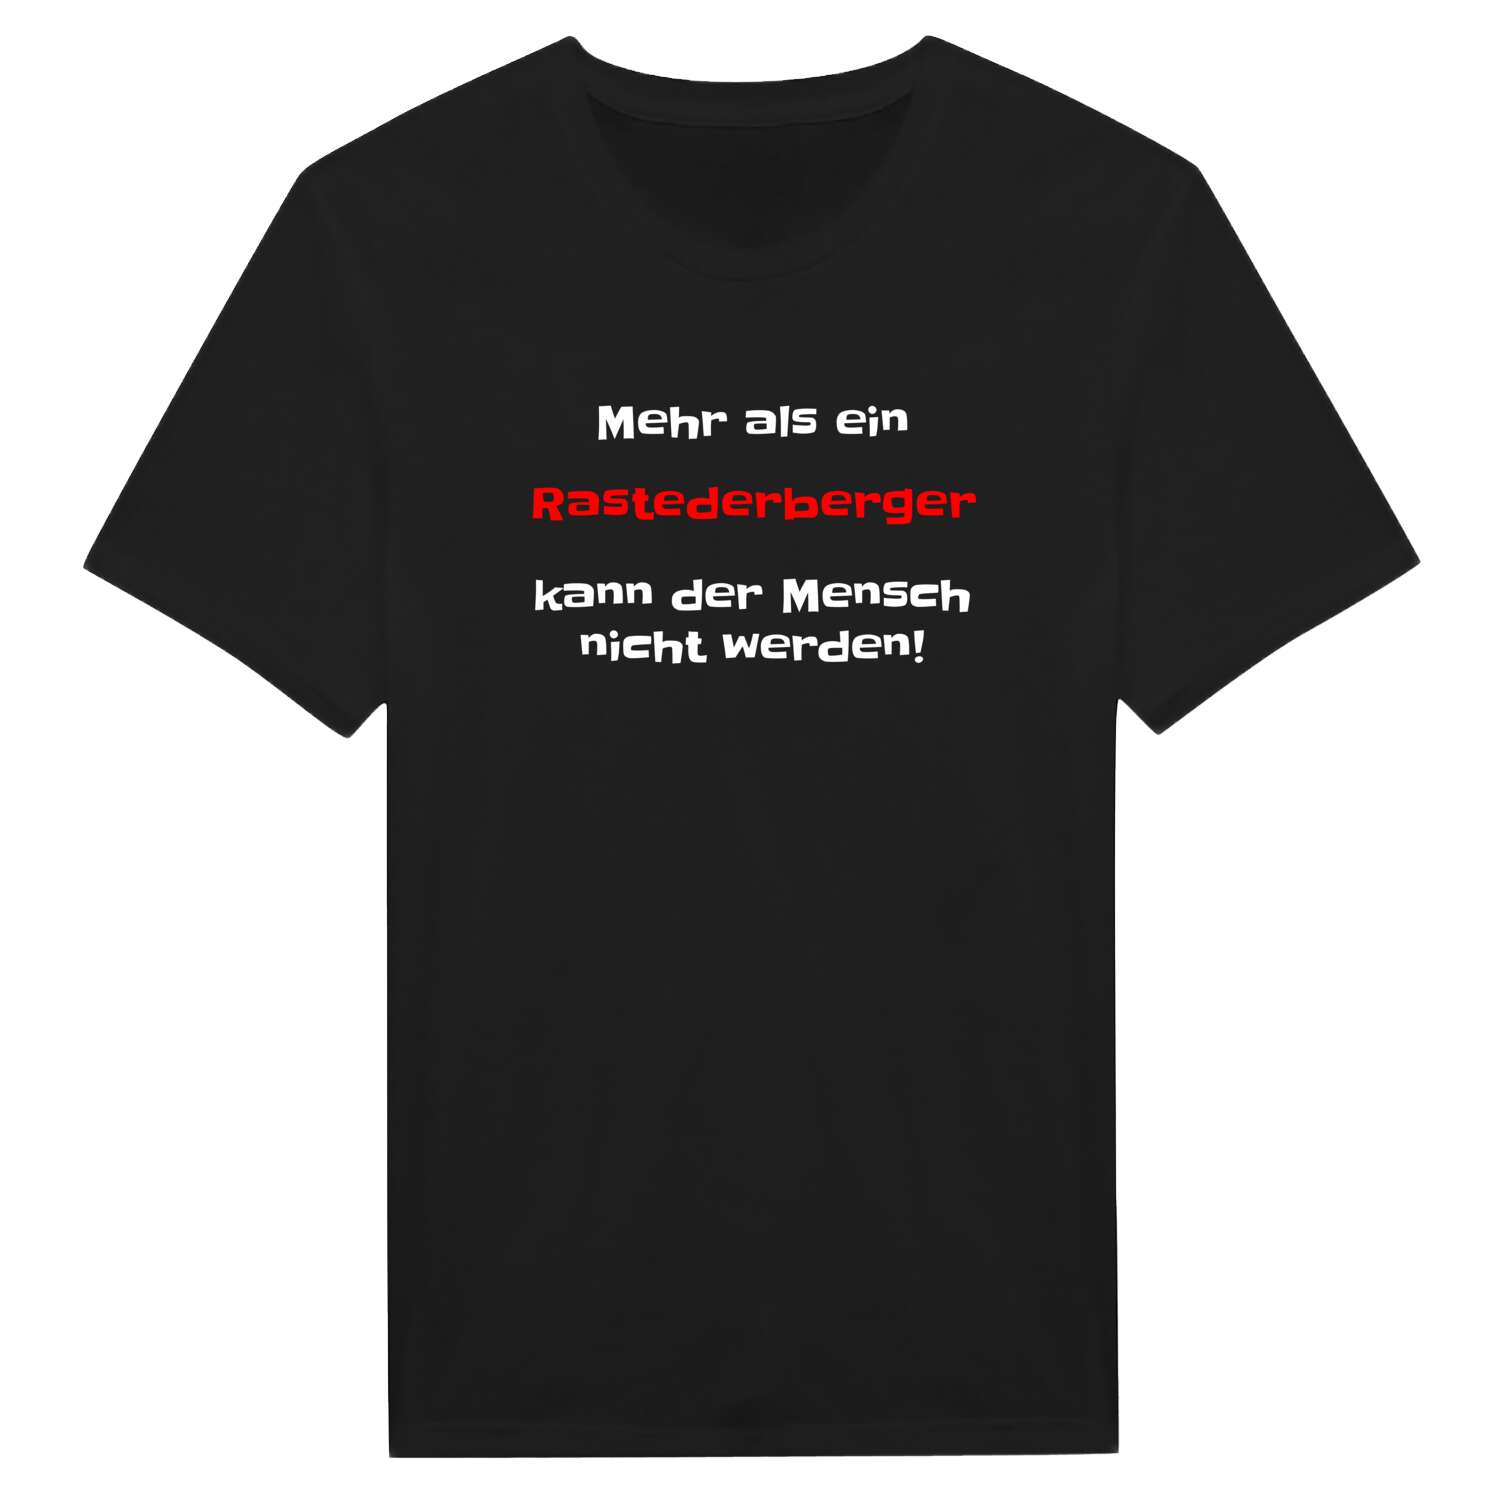 Rastederberg T-Shirt »Mehr als ein«